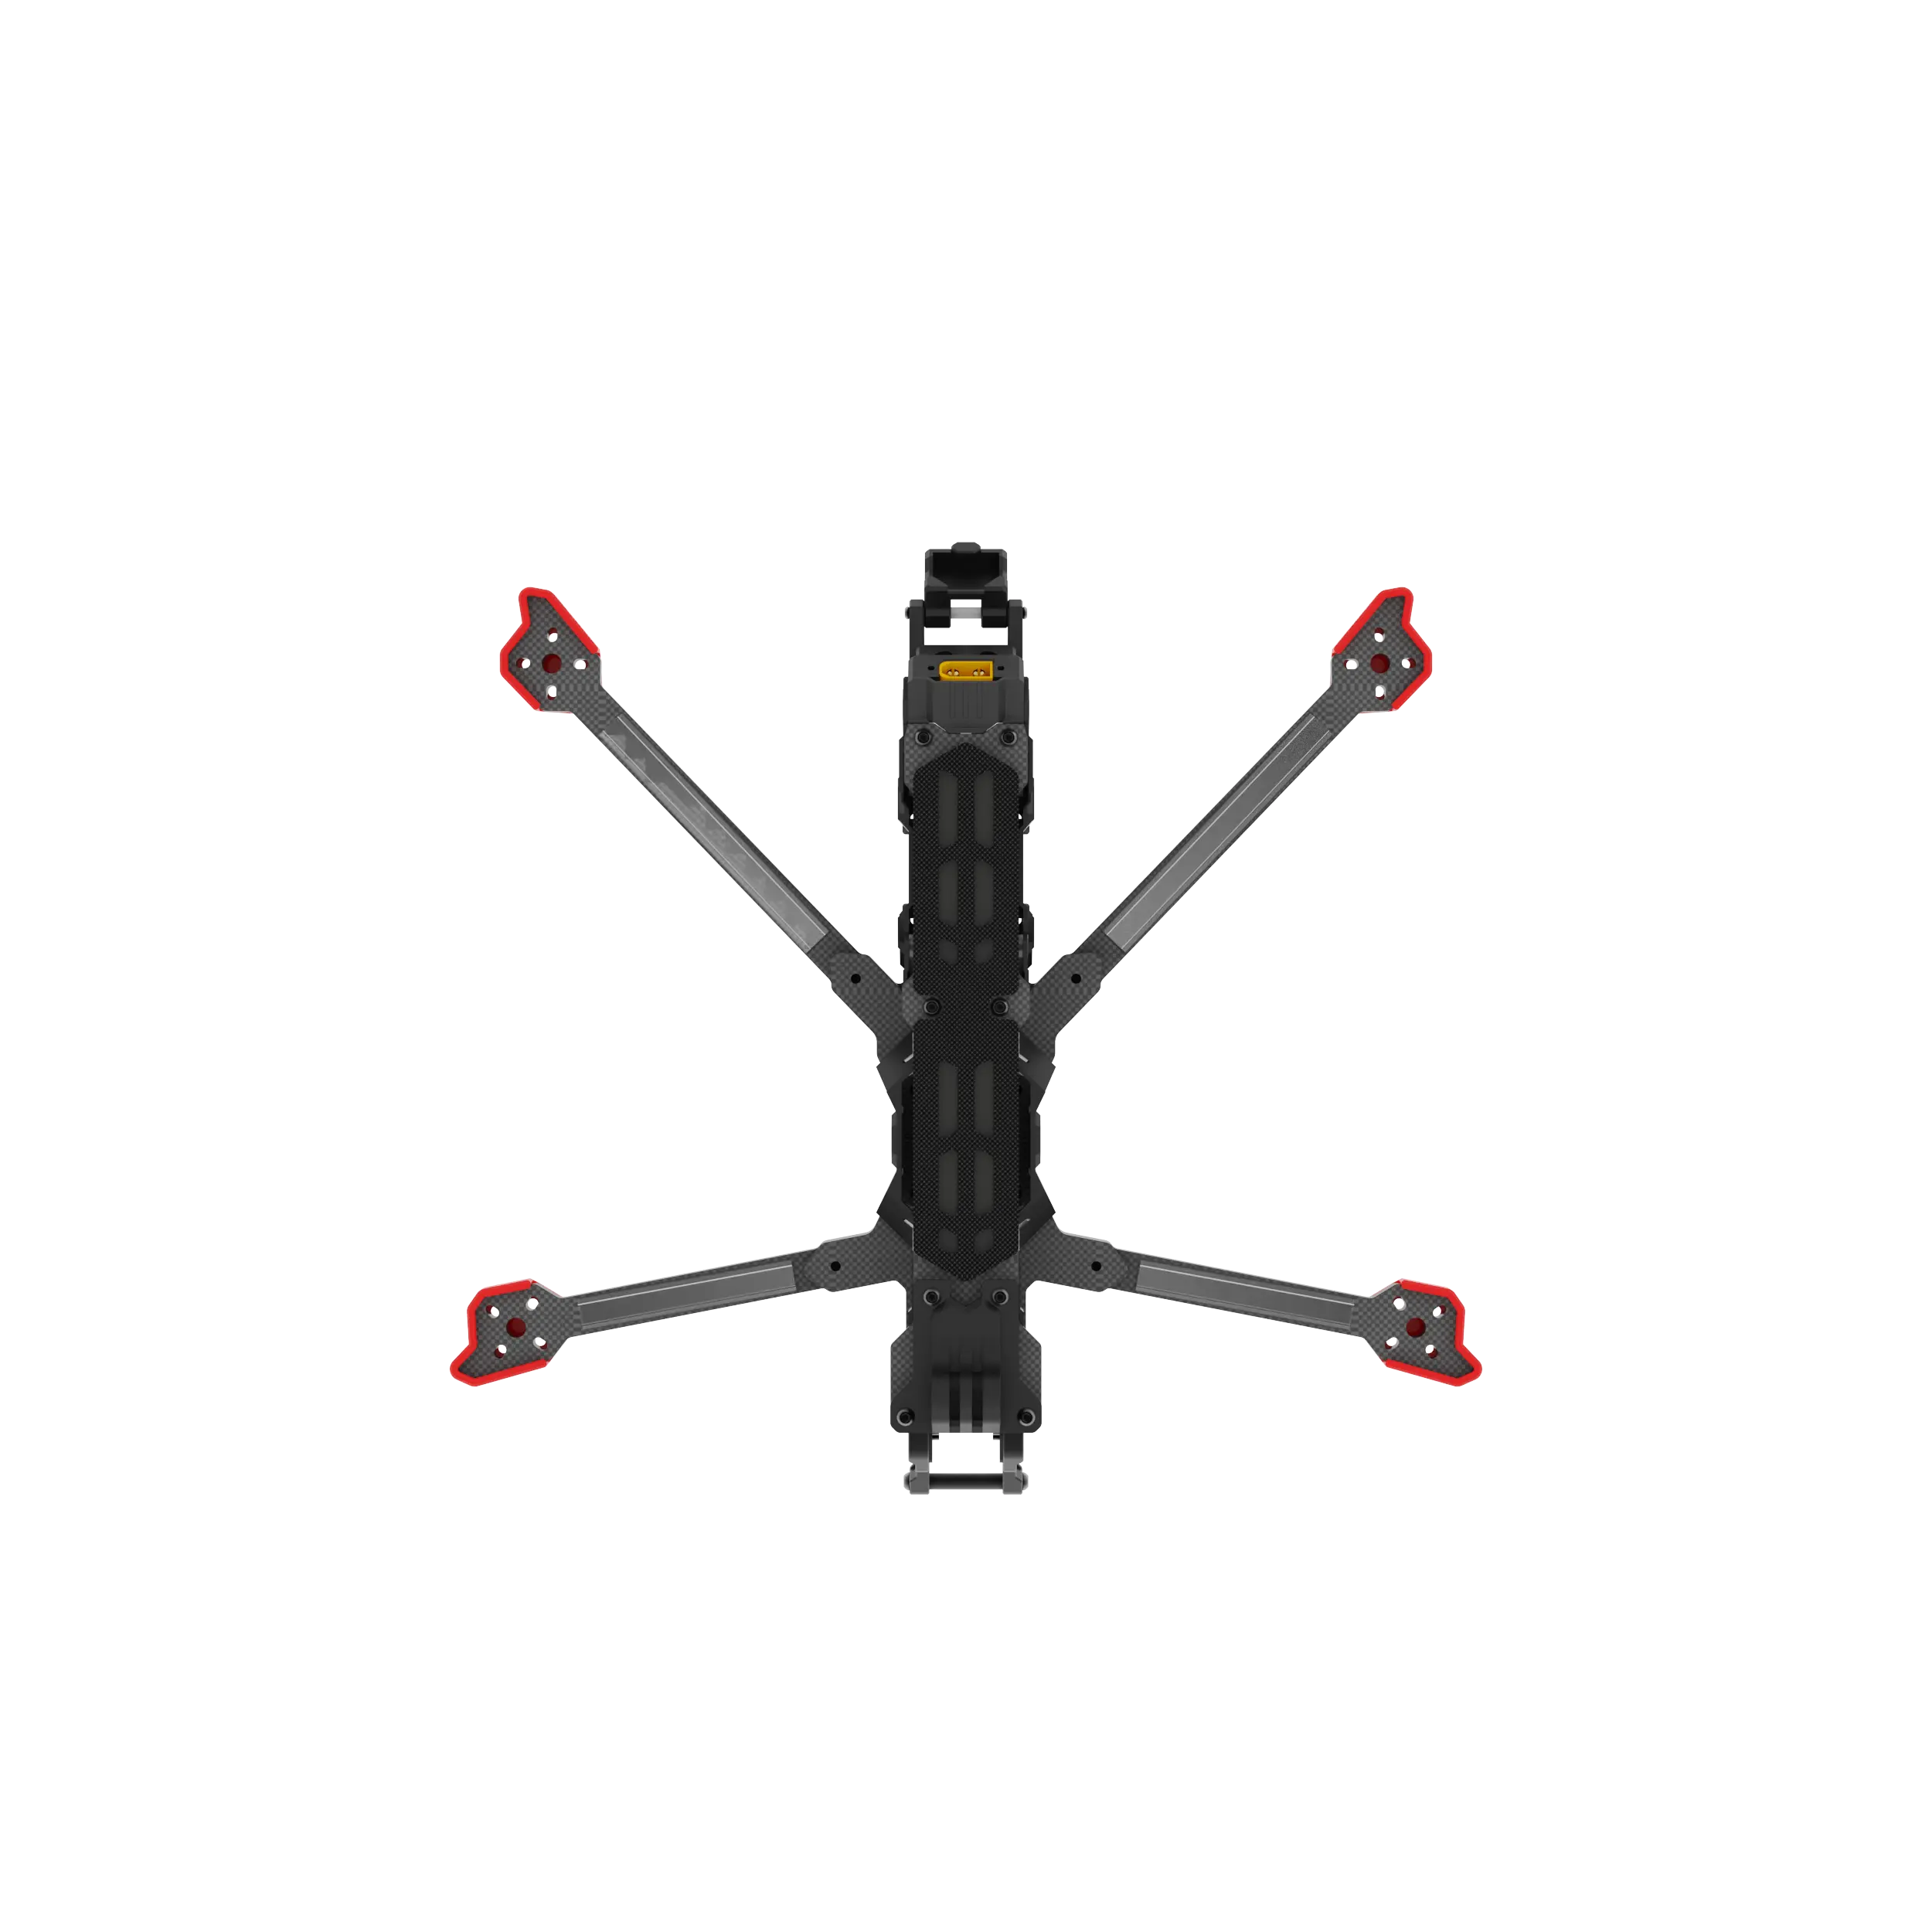 Prezzo diretto di fabbrica Iflight Chimera 7 Pro V2 FPV telaio a lunga distanza macchina attraversamento UAV telaio drone telaio